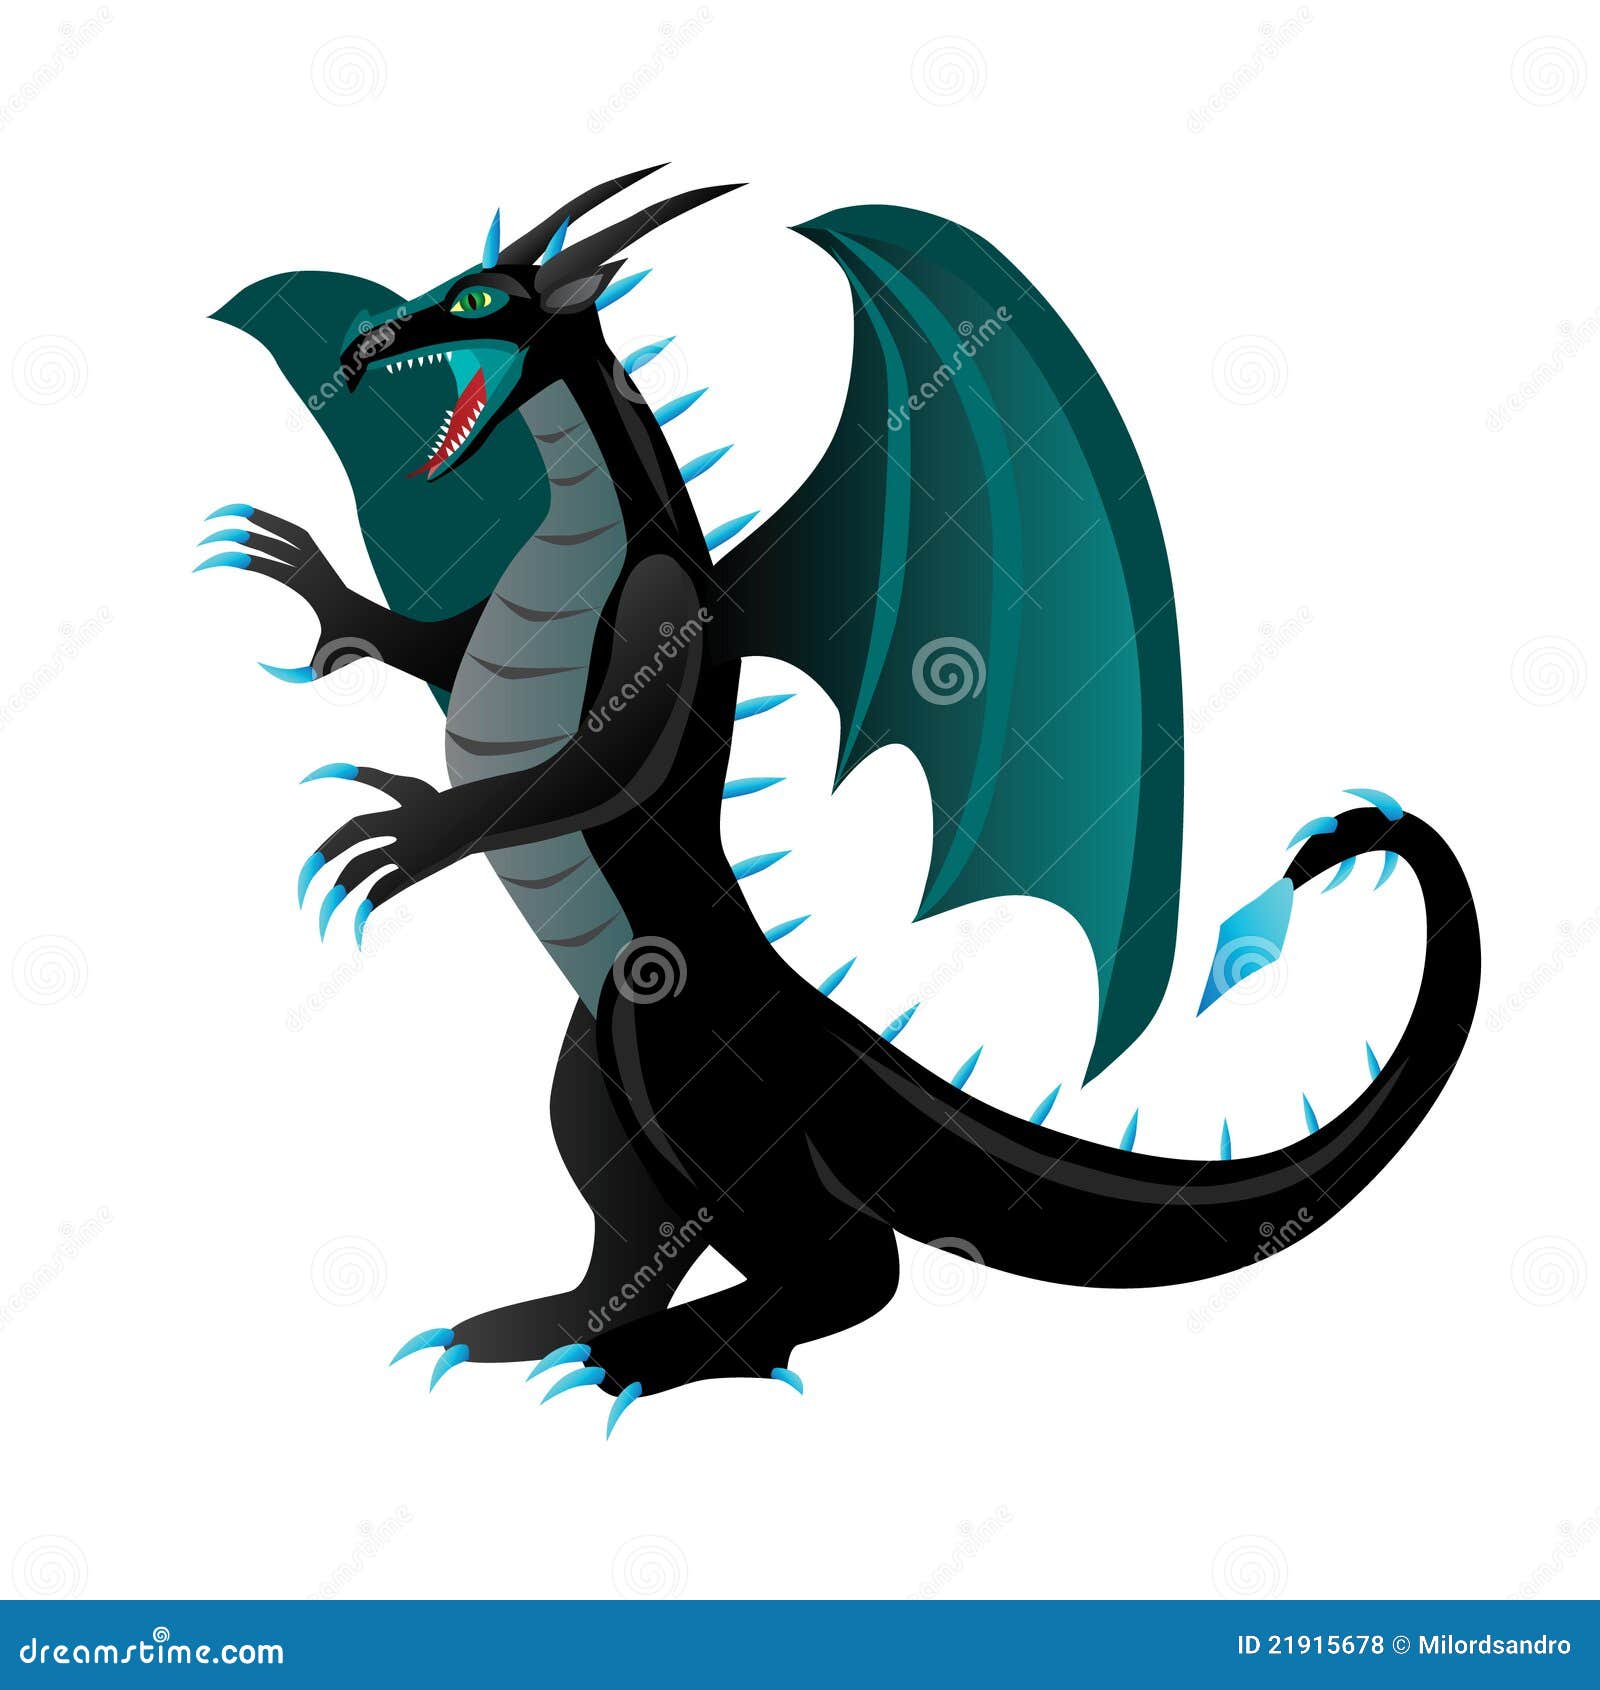 Cartoon black dragon stock vector. Illustration of wing - 21915678